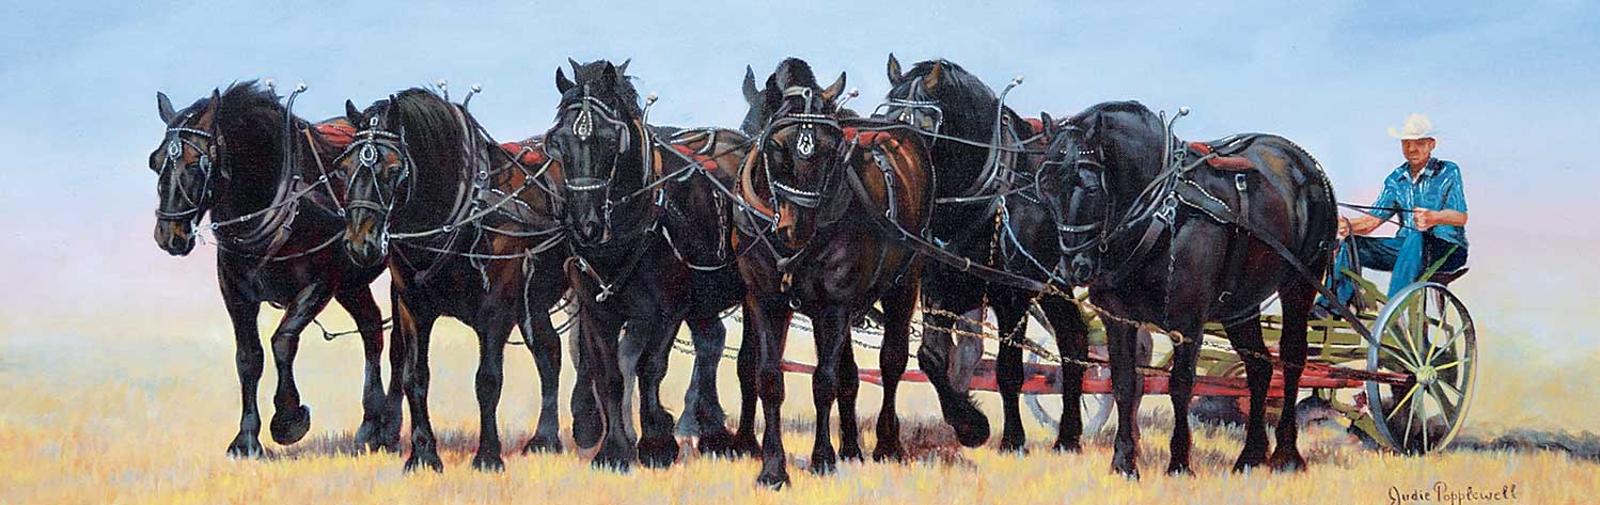 Judie Popplewell - Untitled - Team of Horses